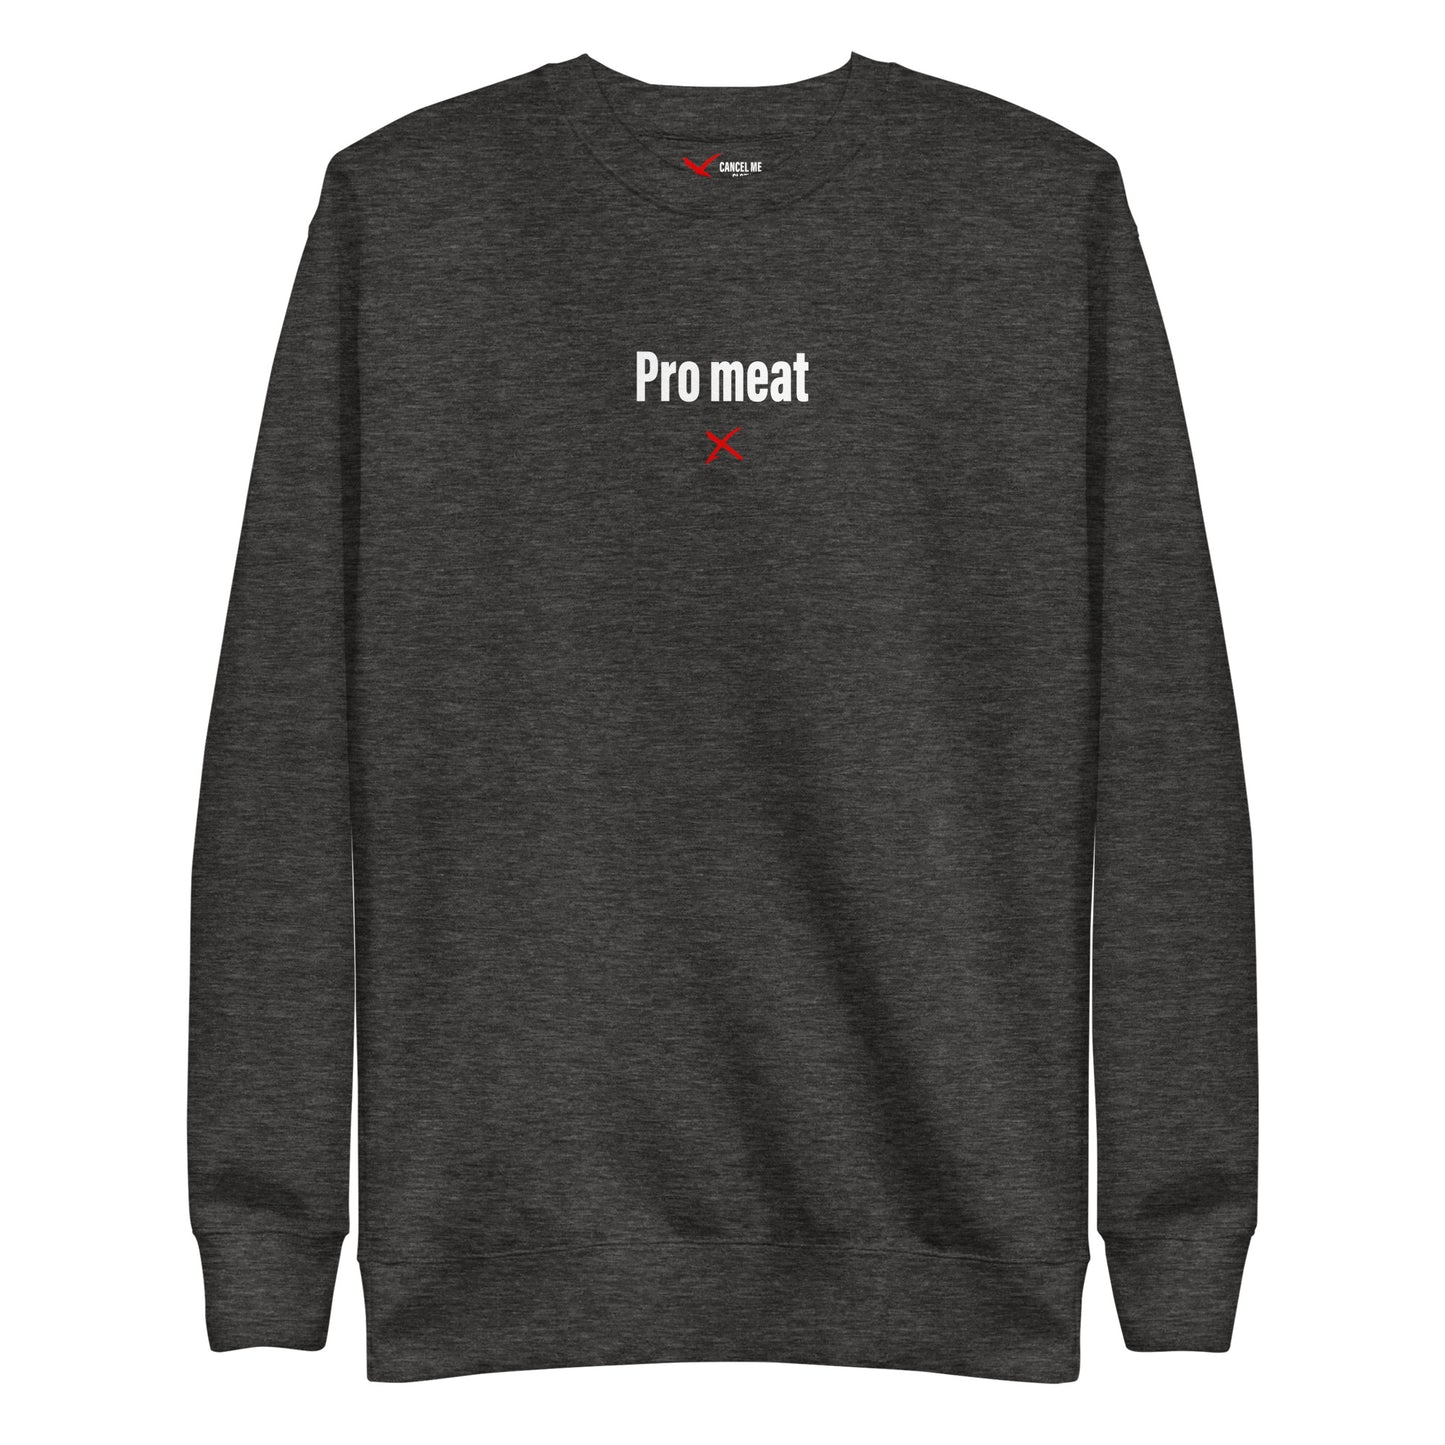 Pro meat - Sweatshirt